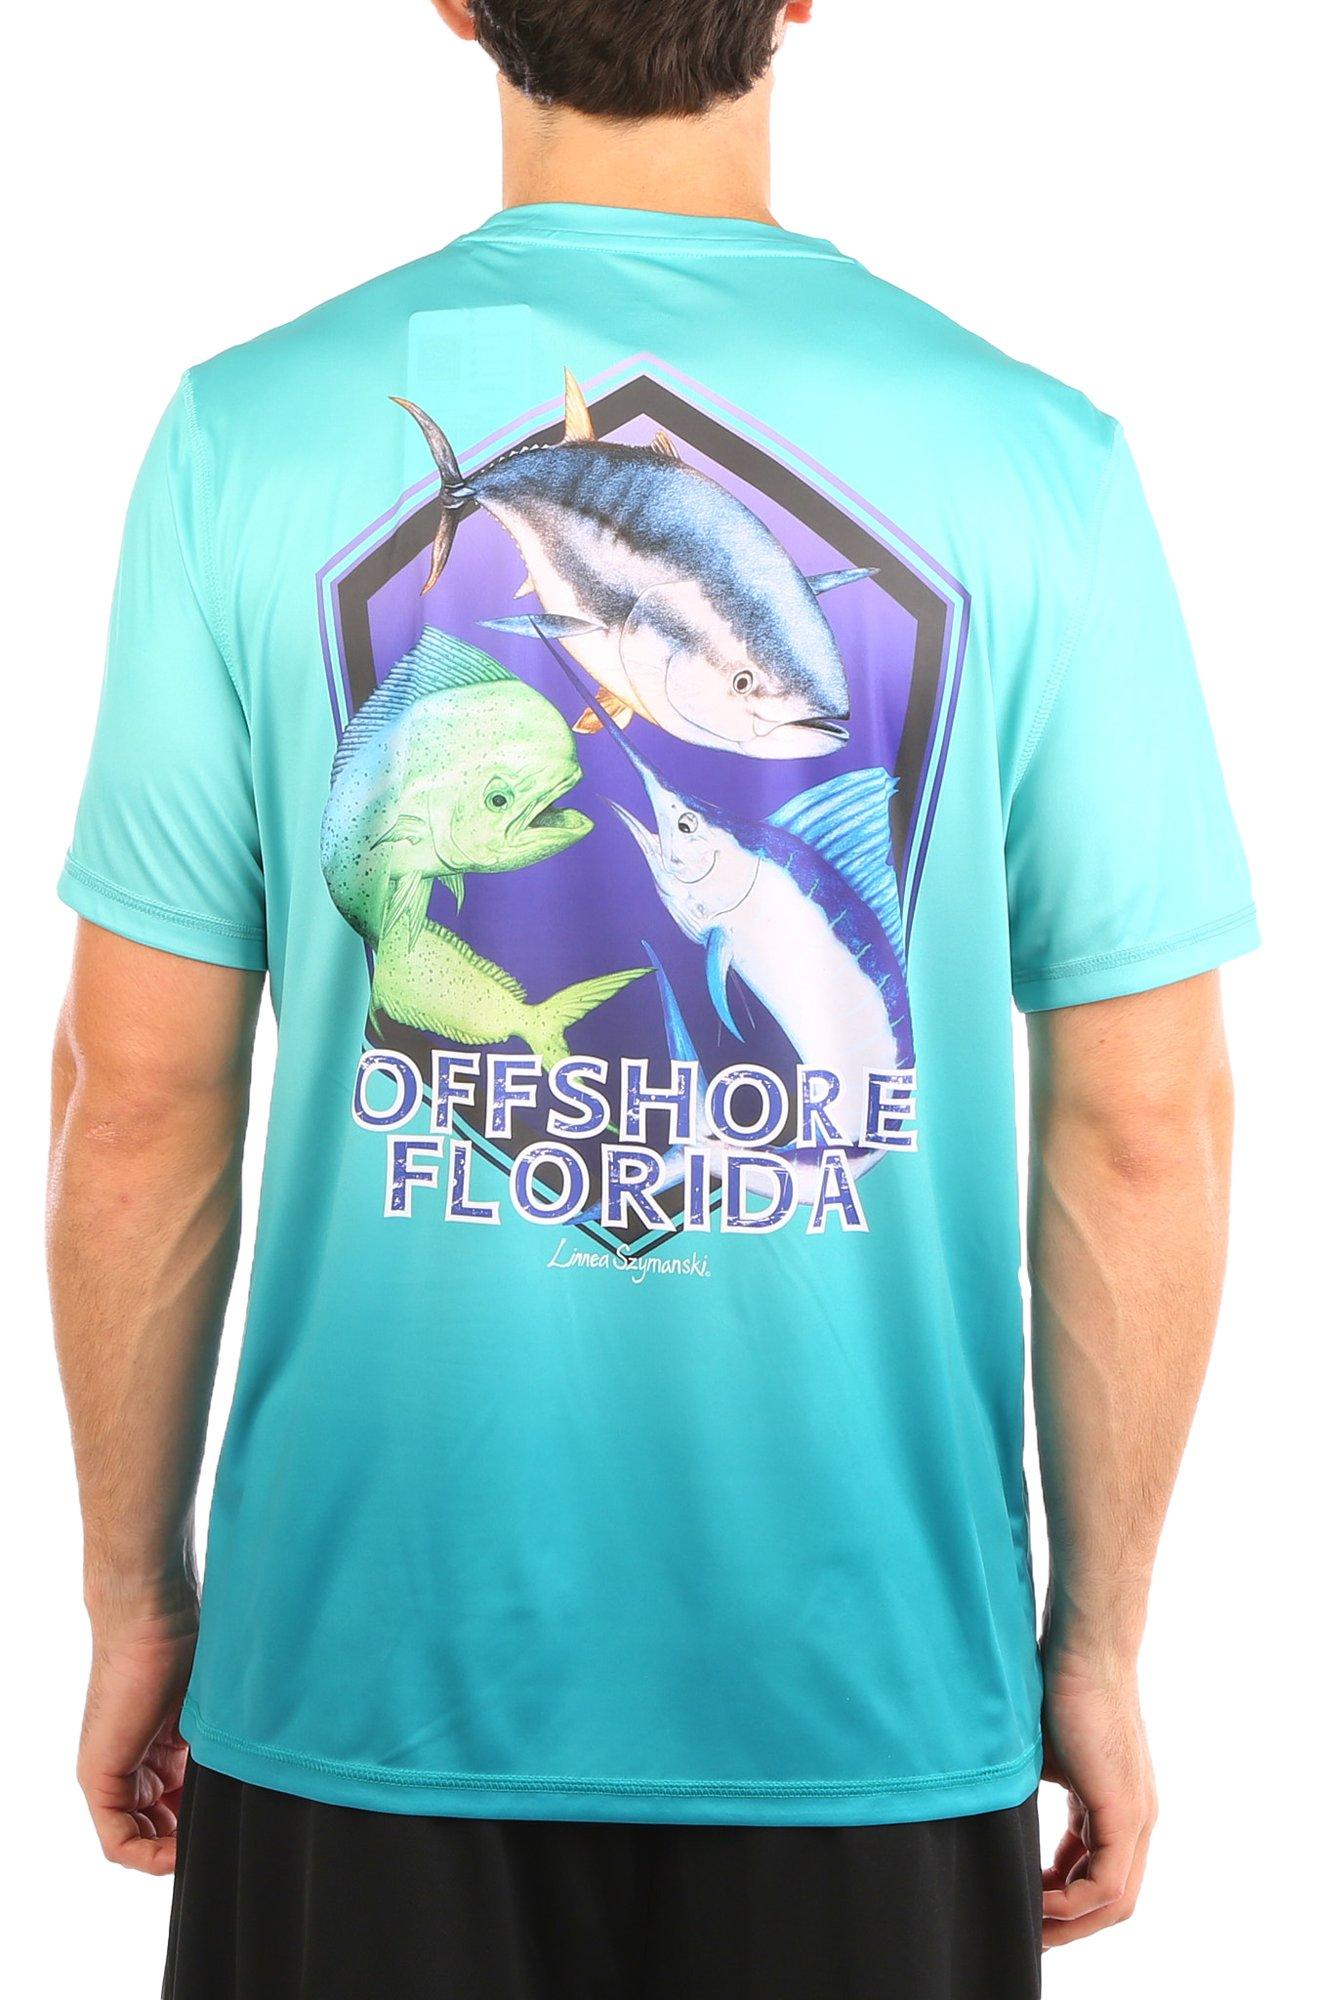 Reel Legends Mens Reel-Tec Offshore Florida Graphic T-Shirt